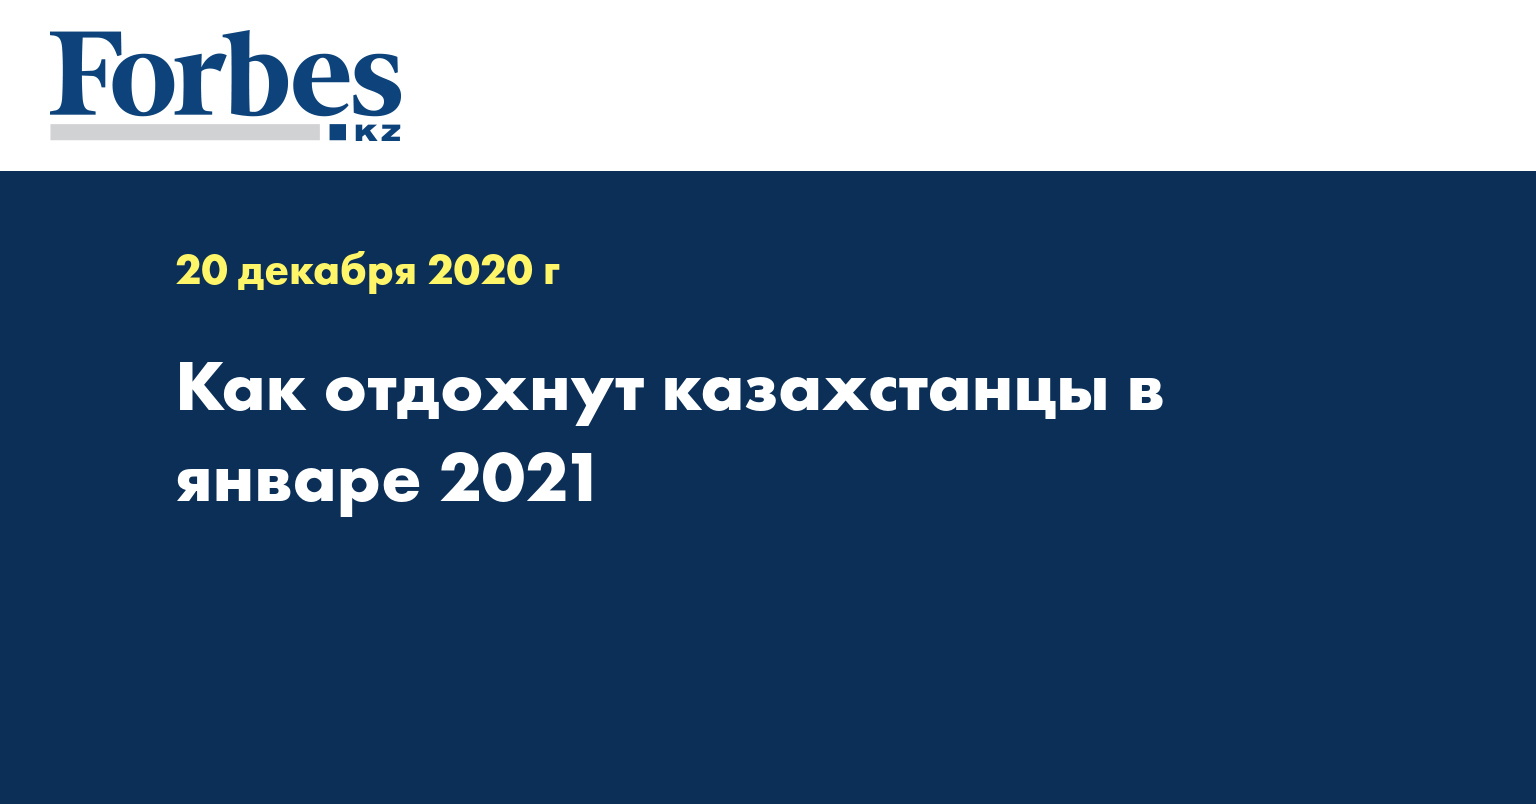 Как отдохнут казахстанцы в январе 2021